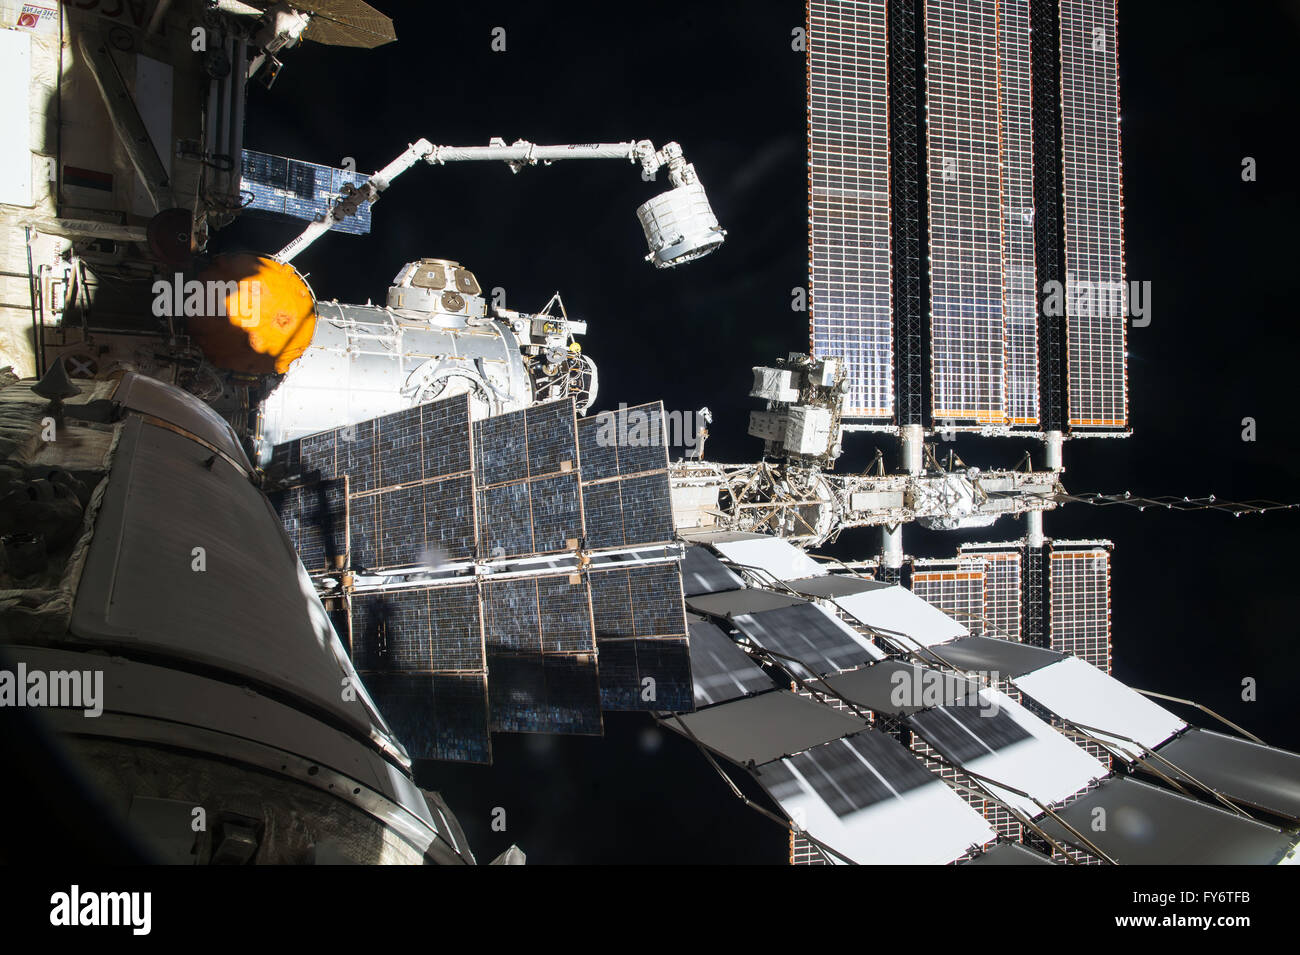 Stazione spaziale internazionale gli astronauti usano la robotica Canadarm2 per spostare la Bigelow espandibile modulo Attività in posizione in quanto è installato Aprile 16, 2016 in orbita intorno alla terra. La sperimentale modulo espandibile è stata attaccata alla porta di poppa del modulo di tranquillità. Foto Stock